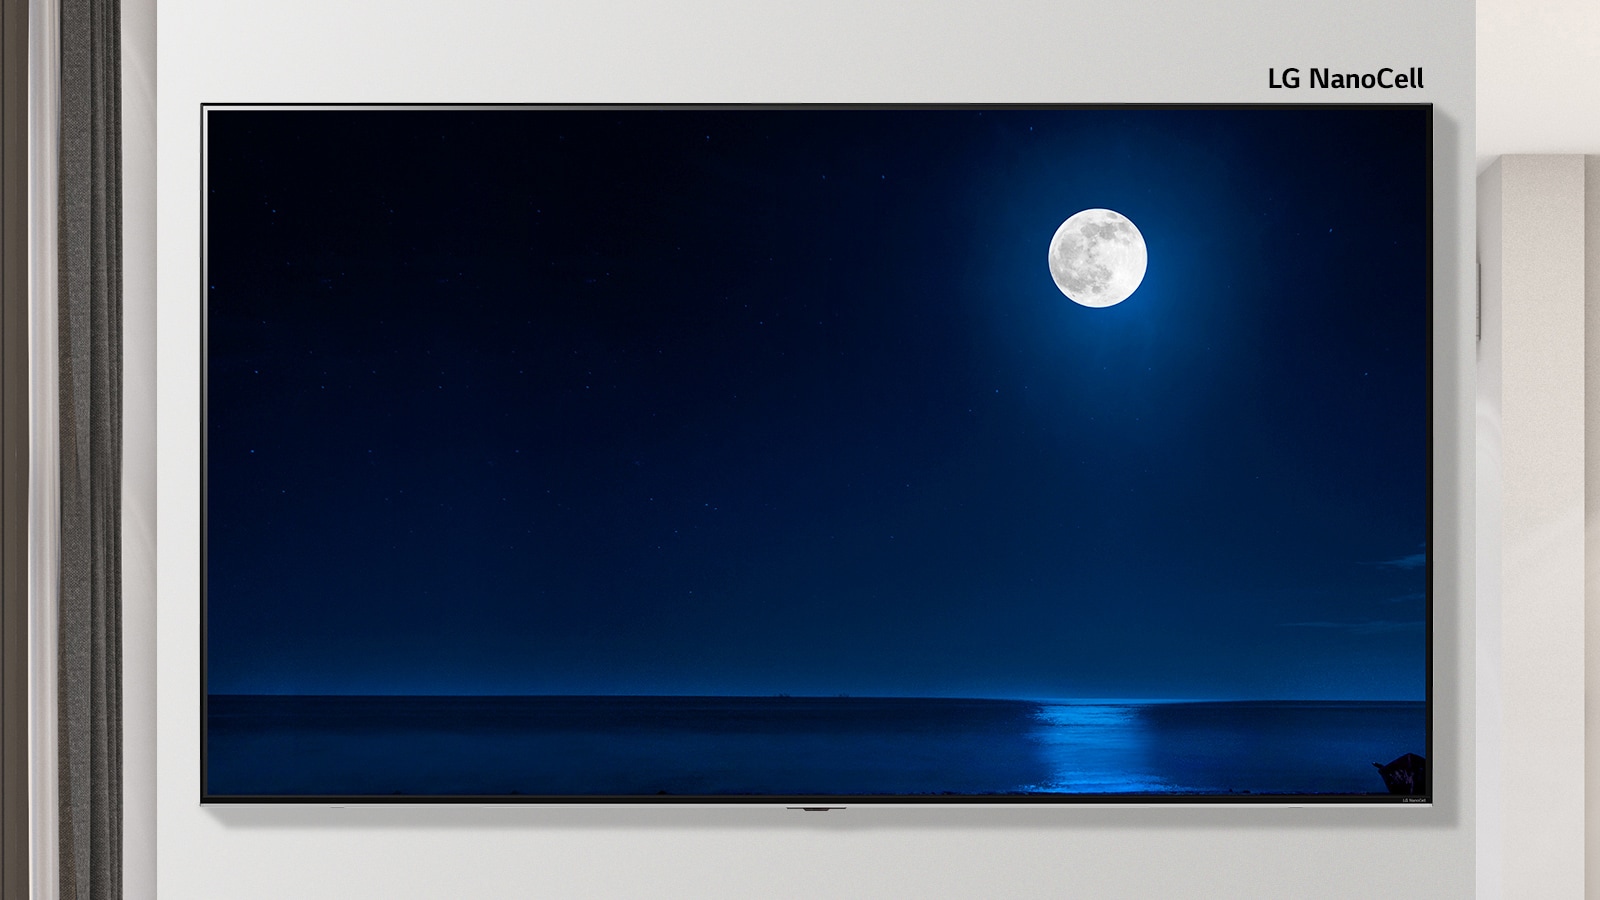 Imagen desplazable de un televisor montado en la pared que muestra una escena oscura de una luna llena que se refleja en el agua. La escena alterna entre un televisor de tamaño normal y un televisor LG NanoCell de pantalla grande.